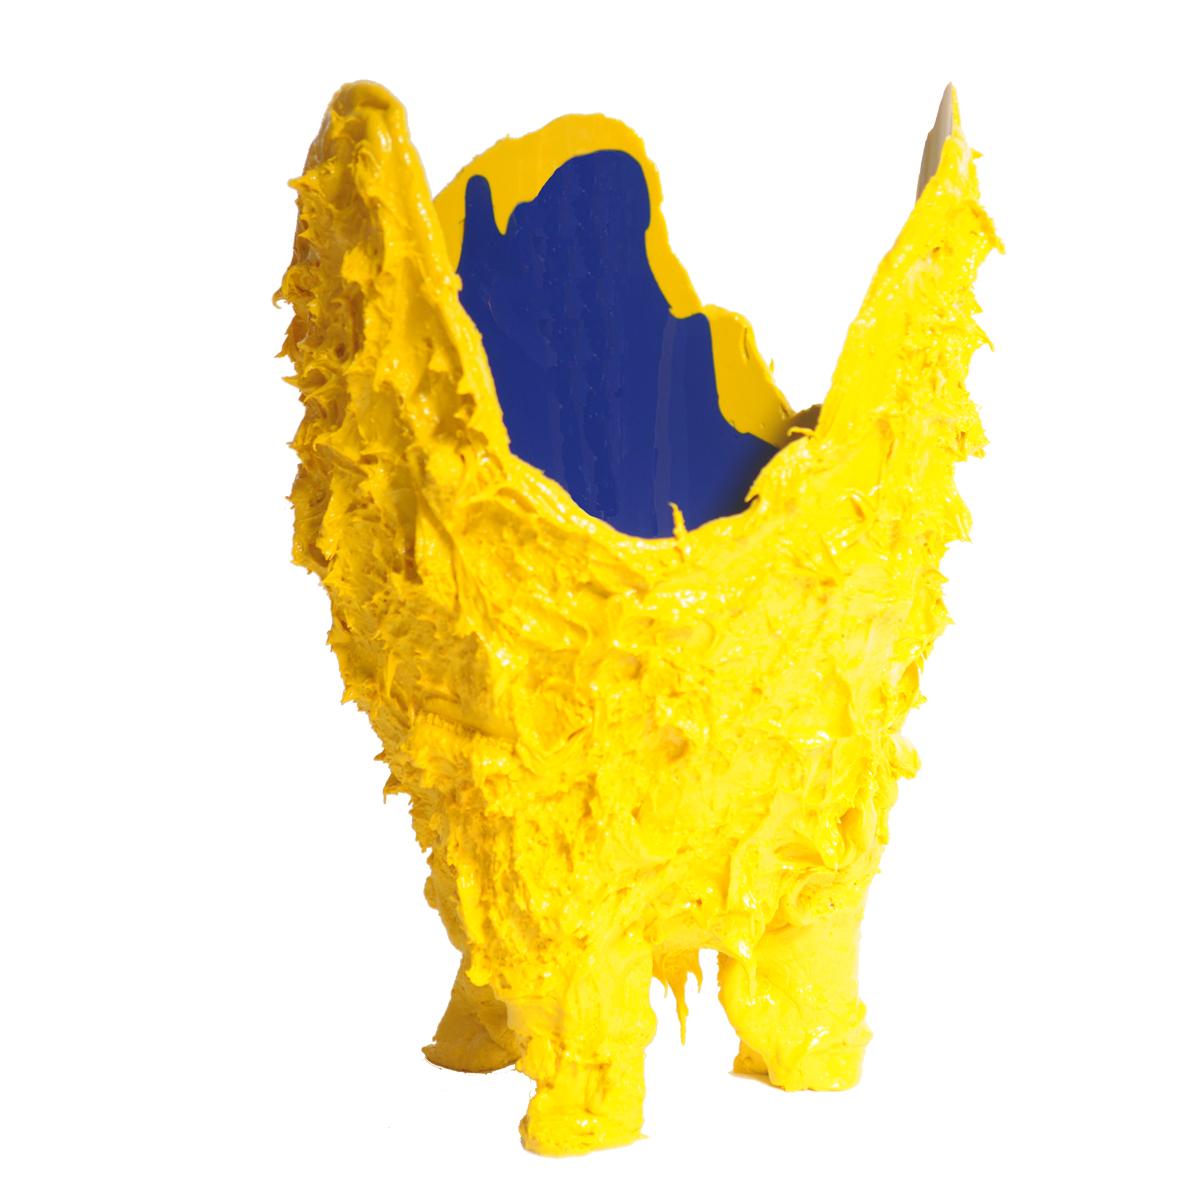 Jarrón de lava, amarillo, azul
Jarrón de resina blanda diseñado por Gaetano Pesce en 1995 para la colección Fish Design.

Medidas: XL - ø 30cm x H 56cm

Otros tamaños disponibles.
Jarrón de resina blanda diseñado por Gaetano Pesce en 1995 para